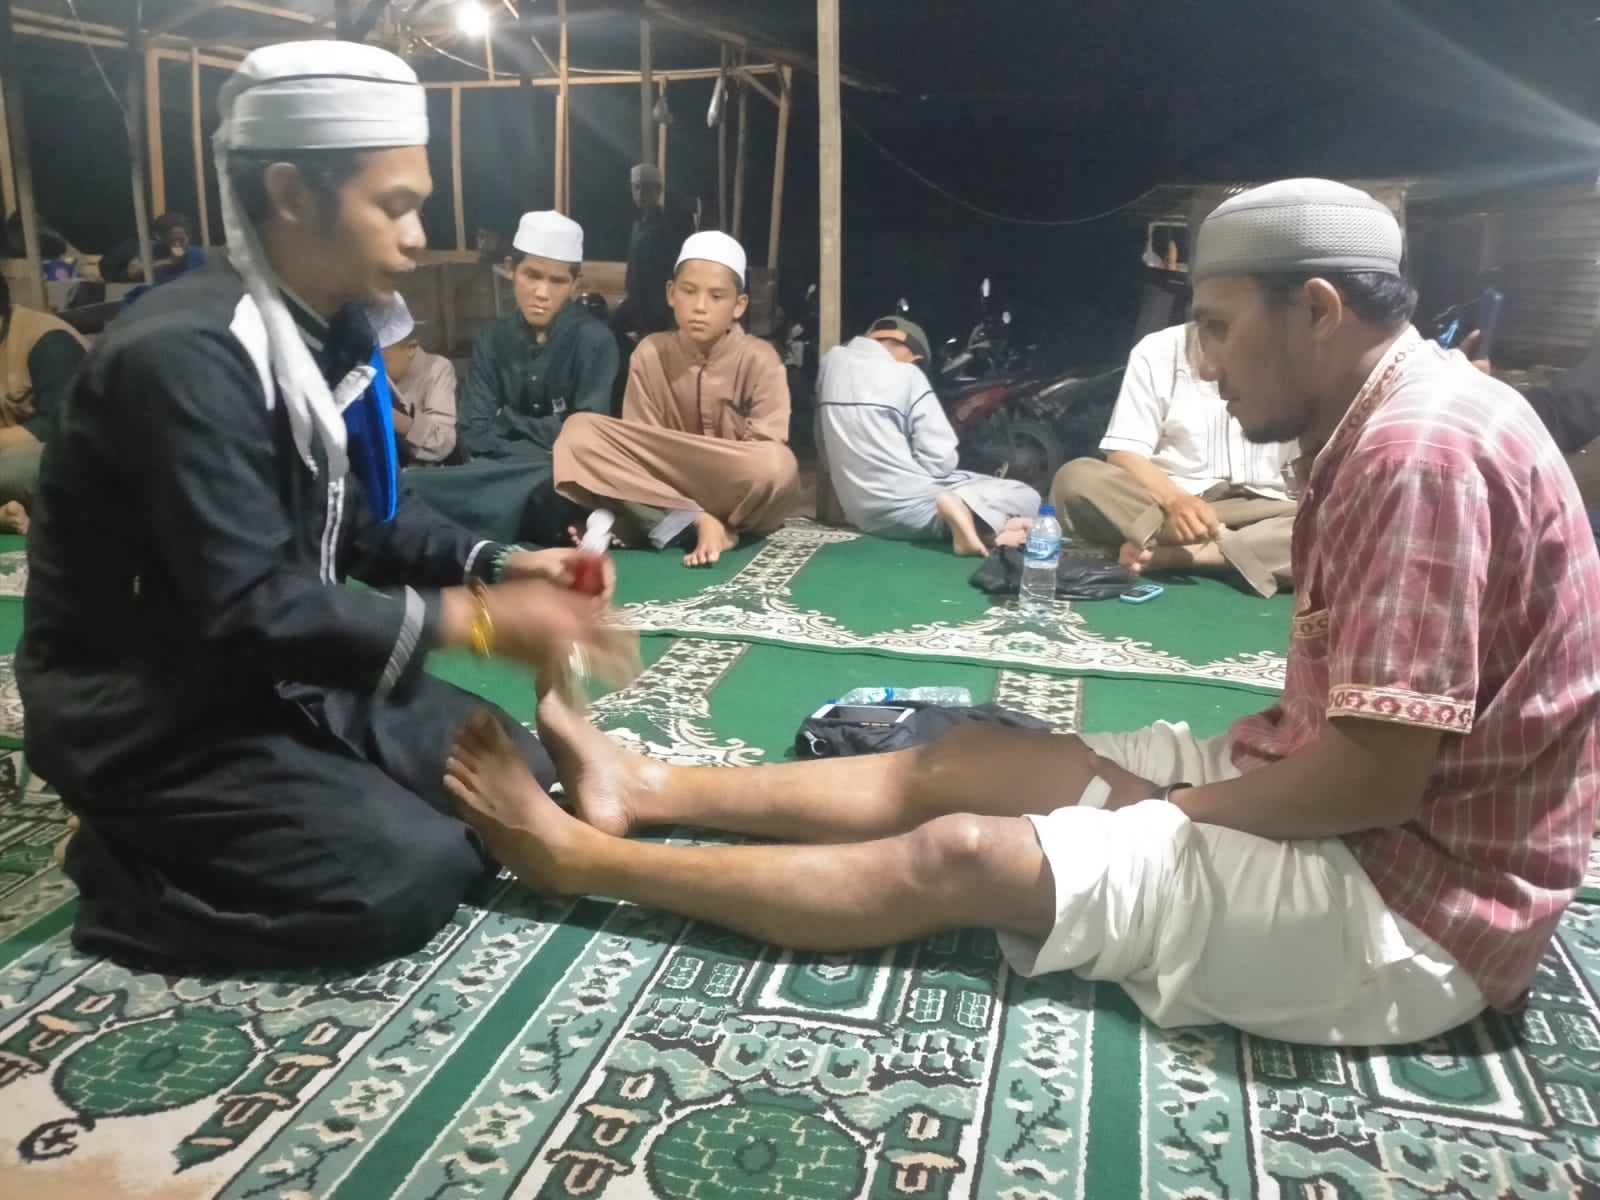 HUT Kota Pekanbaru Ke 238 , Padepokan Asma Alif Al hikmah Binaan T Rusli Ahmad Gelar Pengobatan Gratis